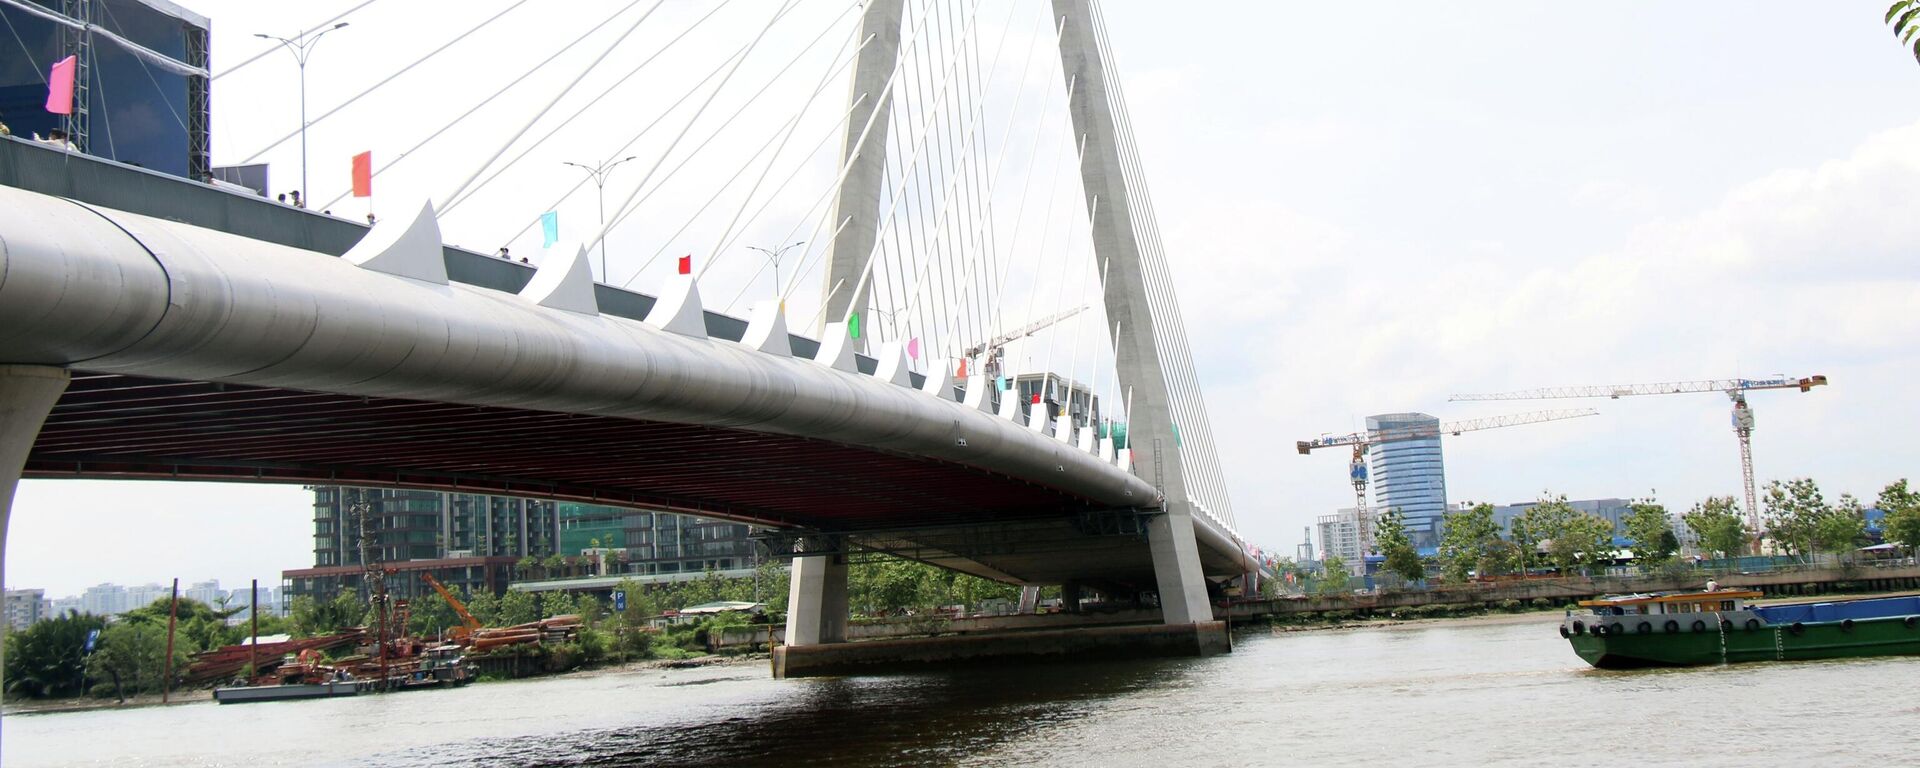 Cầu Thủ Thiêm 2 được thiết kế có một trụ tháp dạng “đầu rồng” bố trí lệch về phía Thủ Thiêm, là điểm nhấn trên sông Sài Gòn - Sputnik Việt Nam, 1920, 28.04.2022